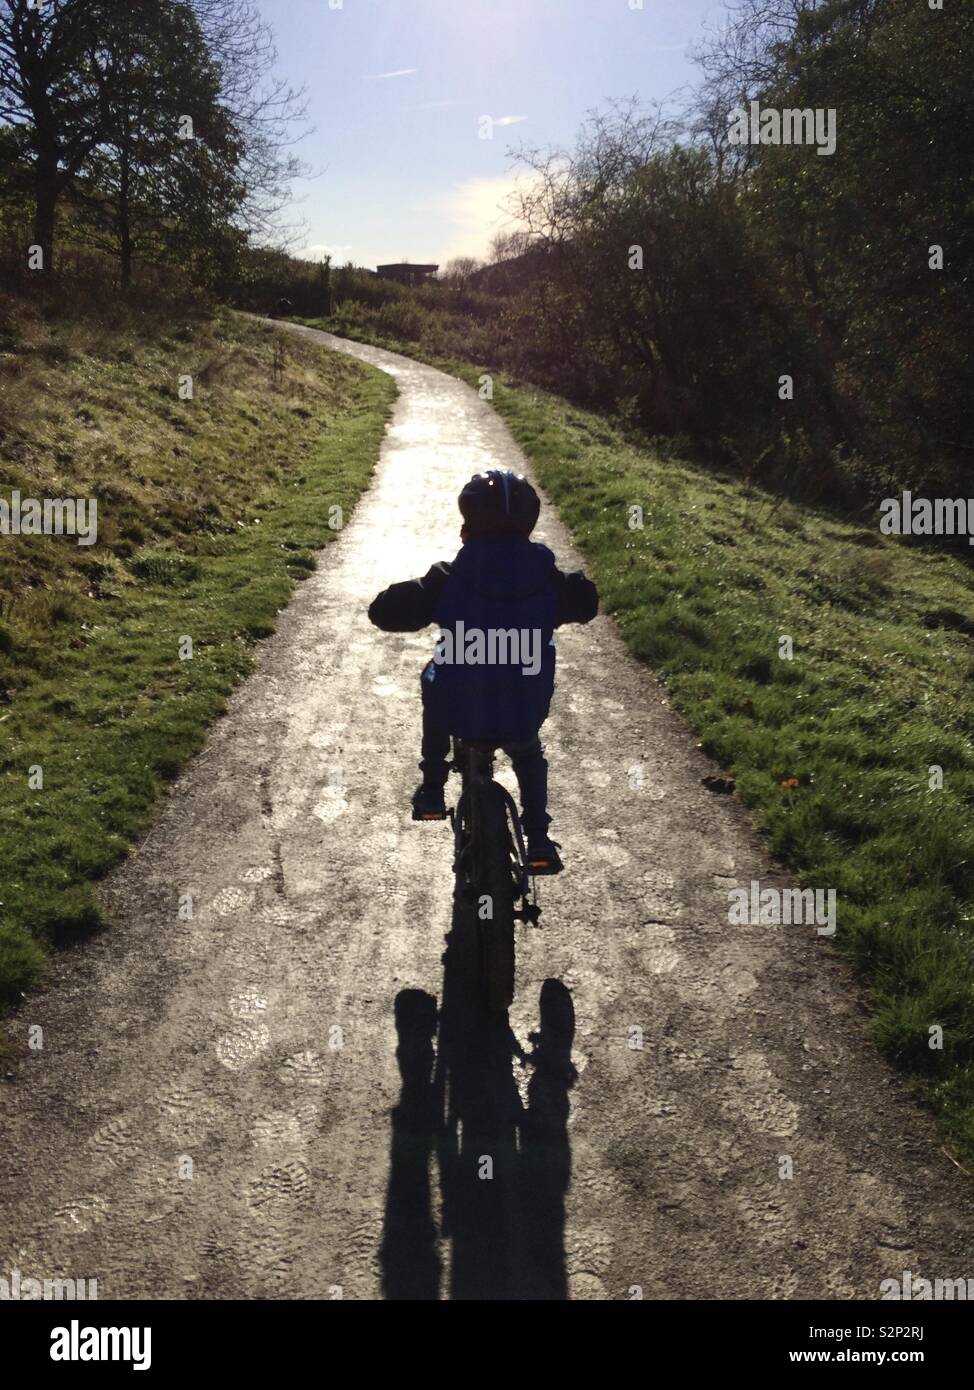 Le premier fils, balade à vélo, et l'aventure, peu de temps après avoir appris à faire du vélo dans le froid sur un Dalby Forest matin de novembre. Banque D'Images